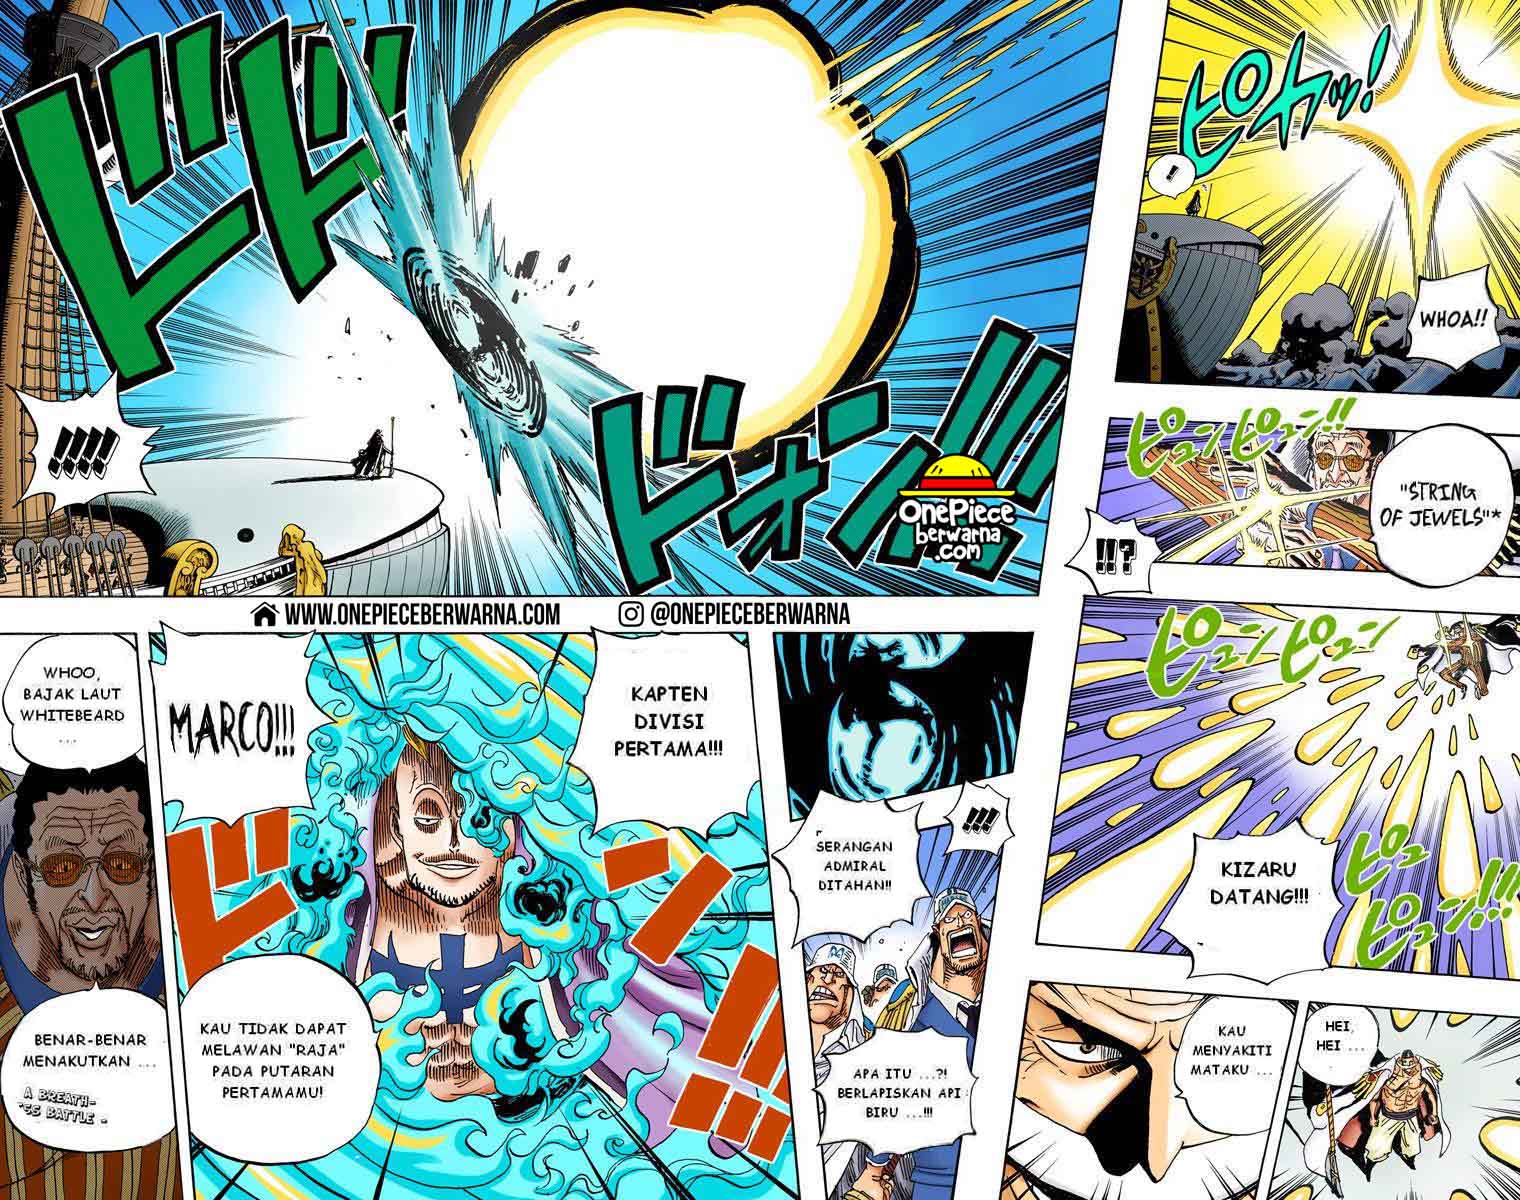 One Piece Berwarna Chapter 553